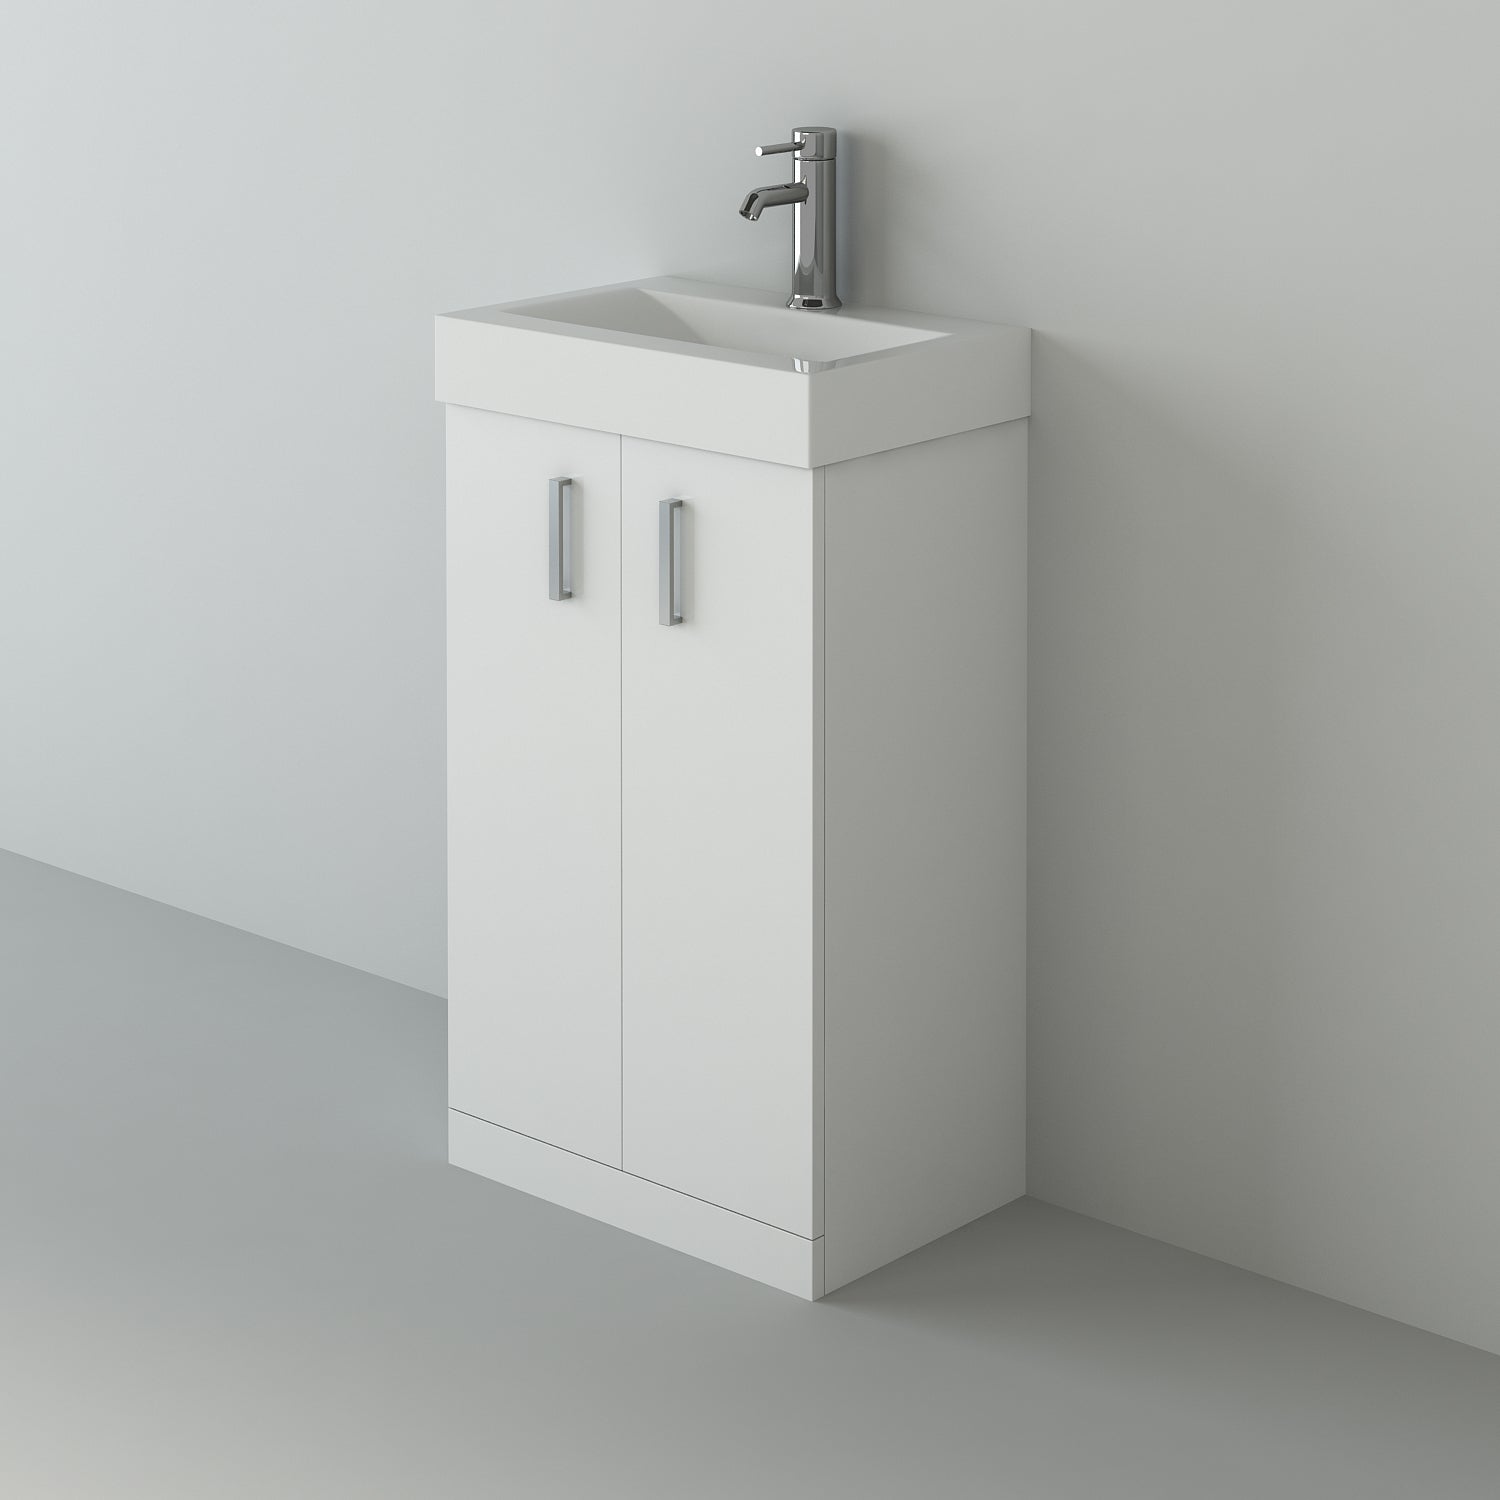 Cube 2 Door Cloakroom Floorstanding vanity Unit With Basin - 1 Tap Hole - 450mm x 720mm